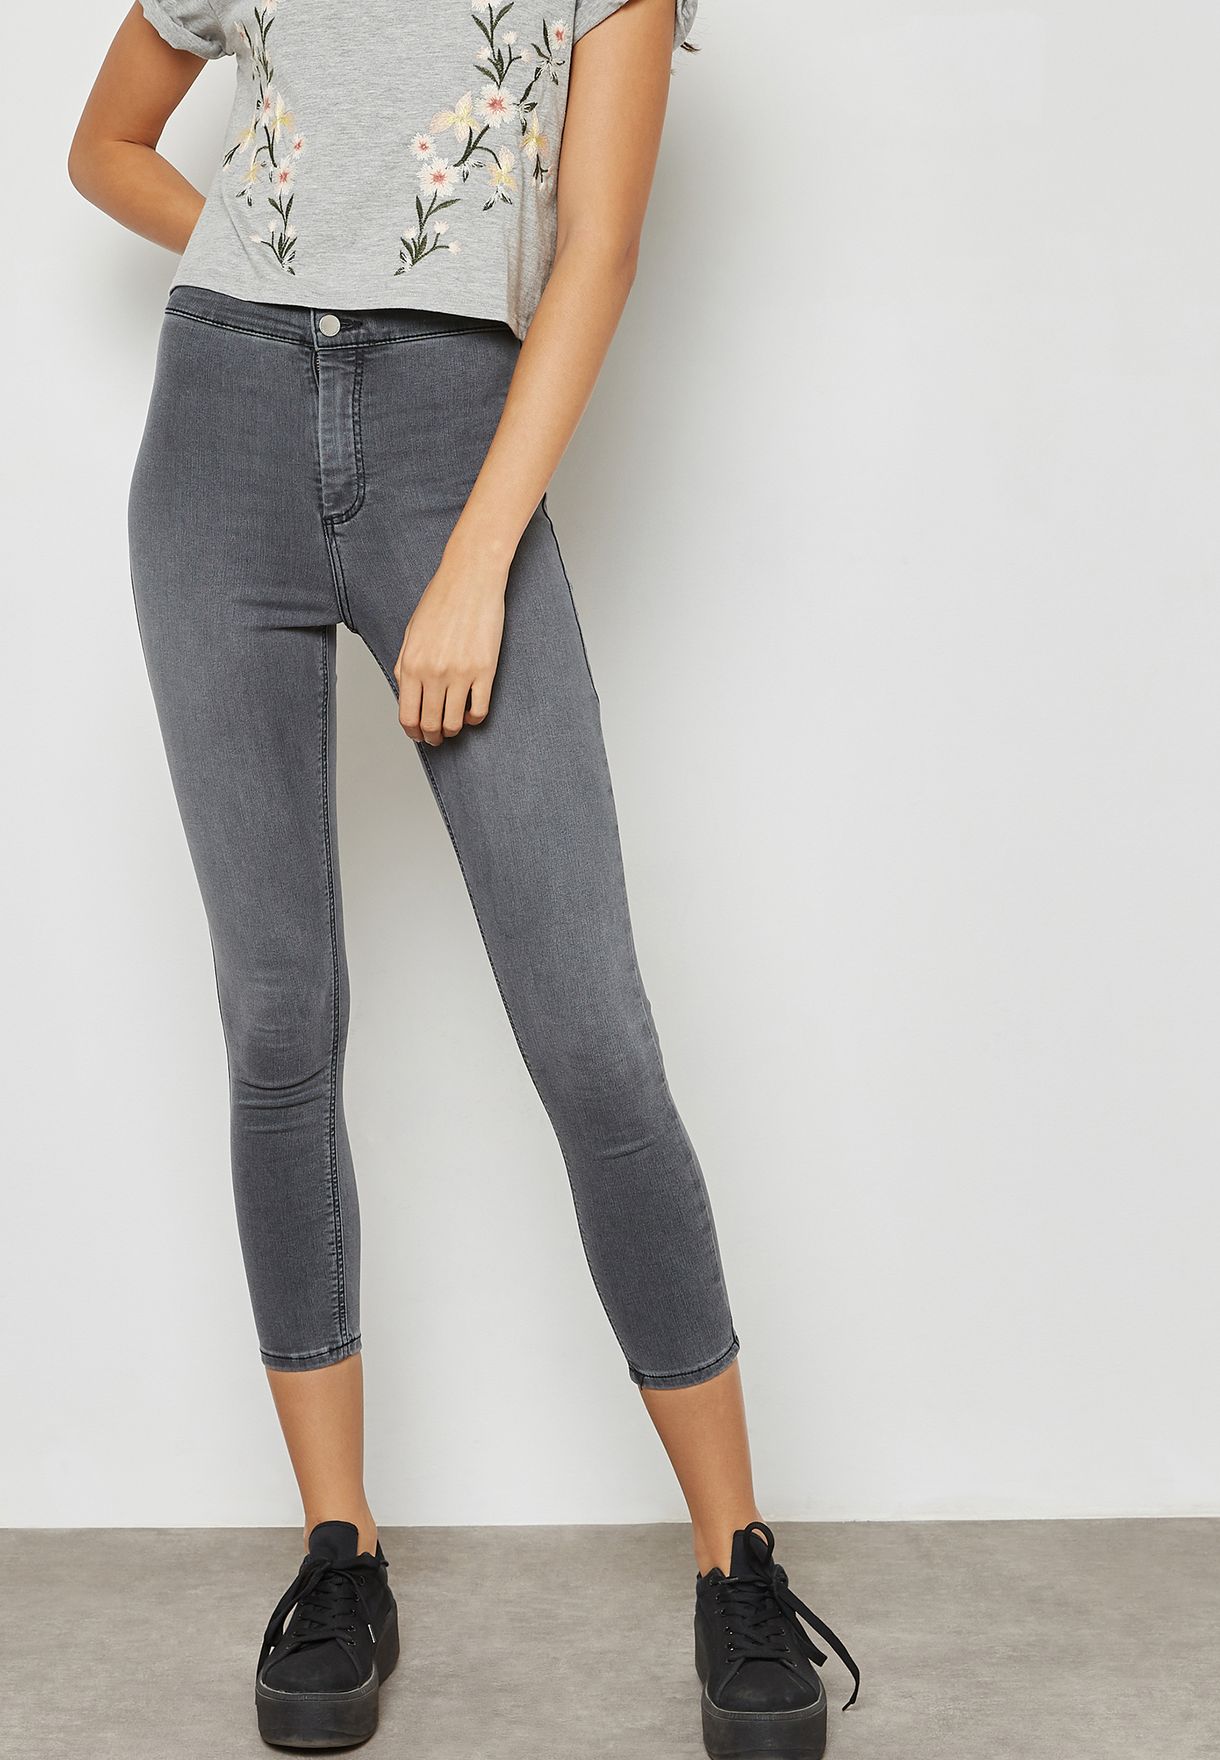 grey joni jeans